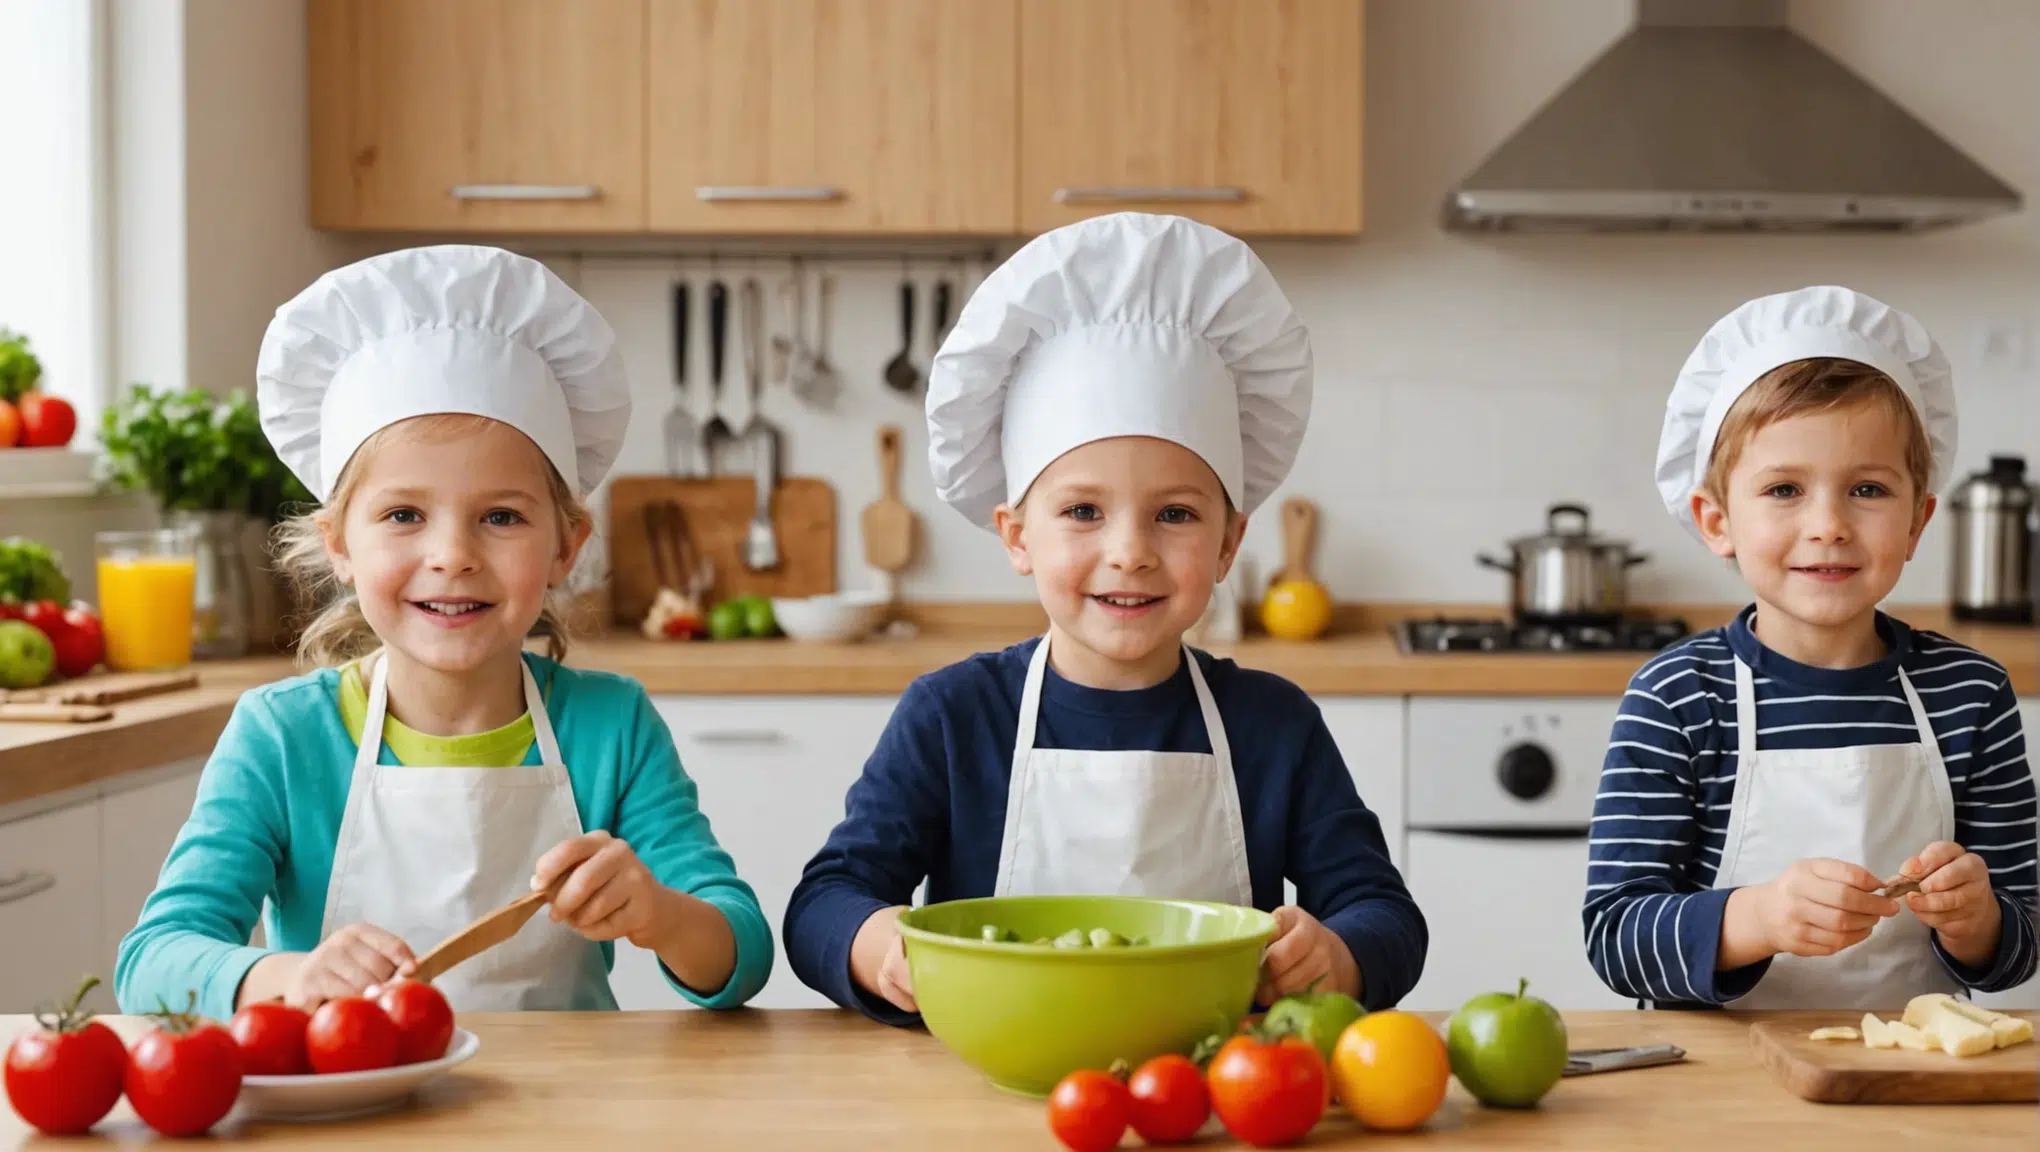 découvrez des idées pour rendre la cuisine amusante et éducative pour vos enfants avec nos astuces ludiques et recettes adaptées.